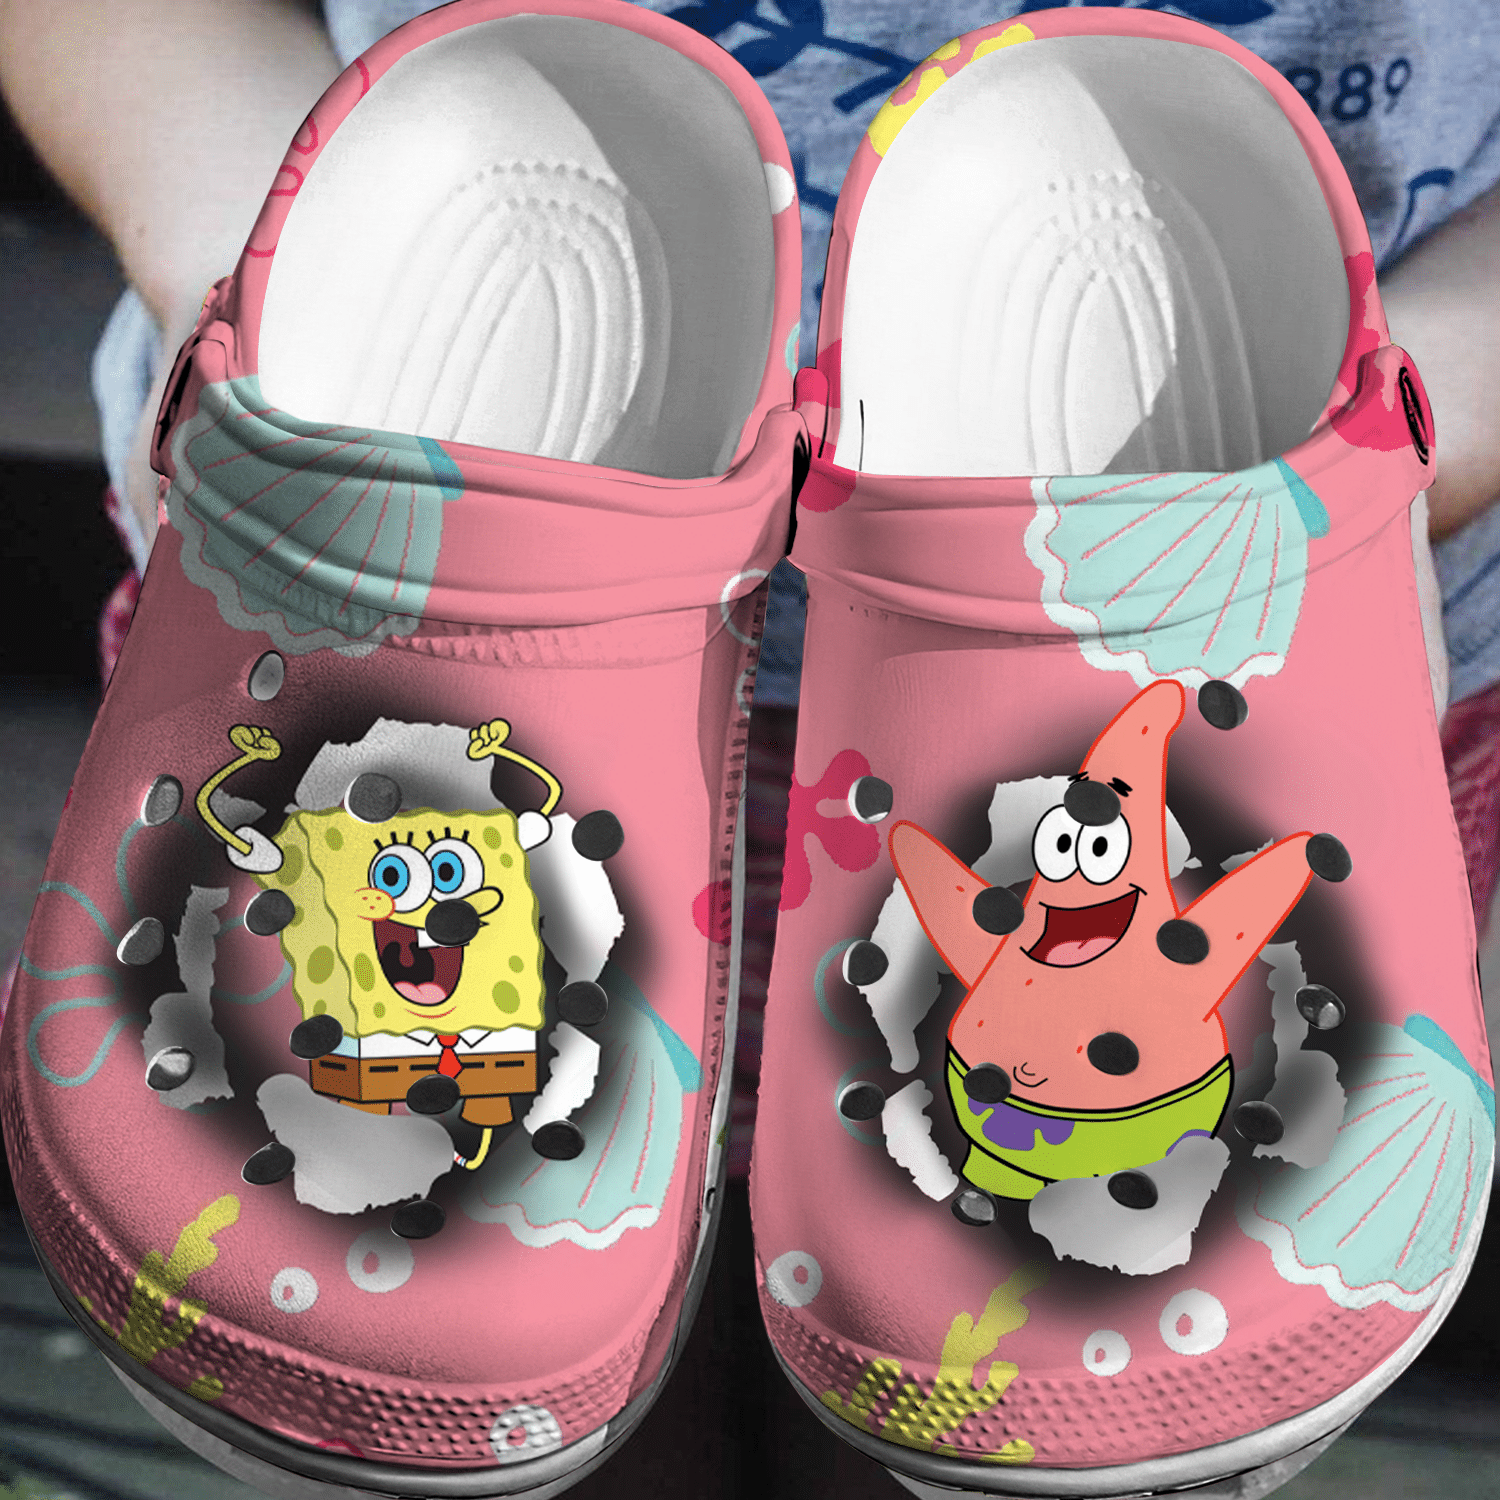 Spongebob Patrick Crocs 3D Clog Shoes